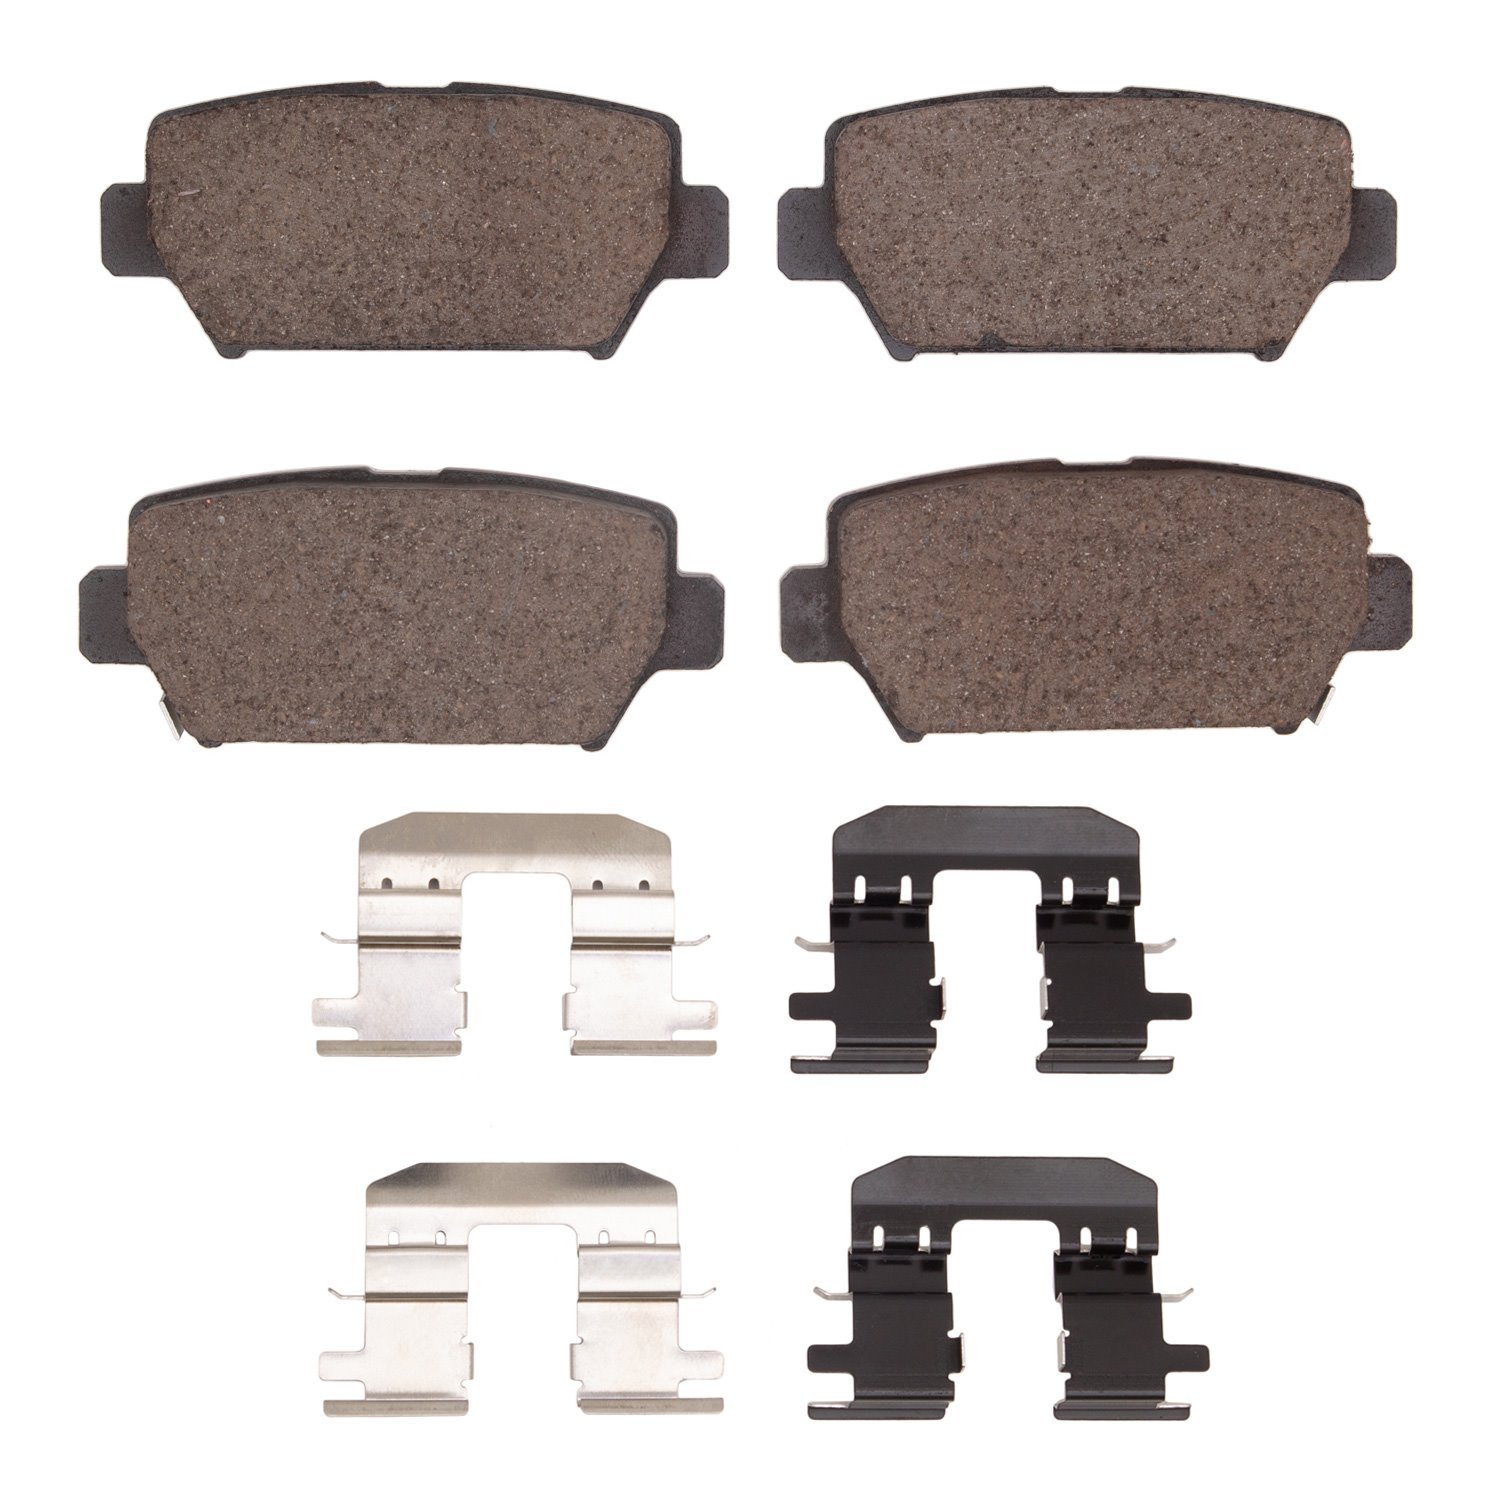 1310-2156-01 3000-Series Ceramic Brake Pads & Hardware Kit, Fits Select Mitsubishi, Position: Rear